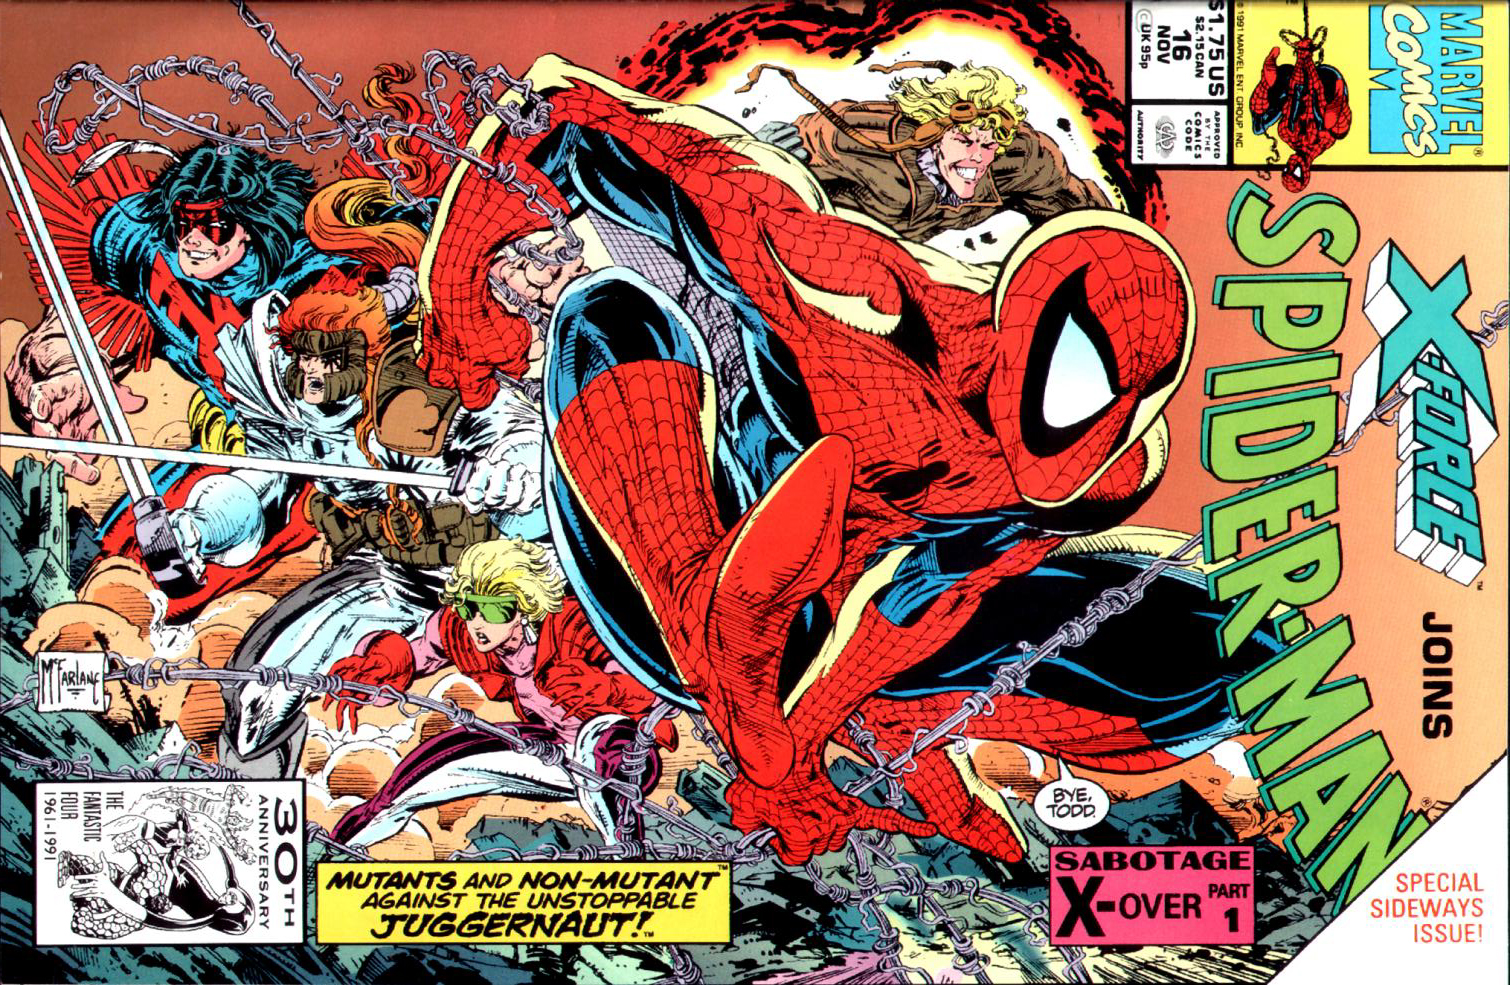 Spider-Man (1990) 16_-_The_Sabotage_Part_1 Page 0